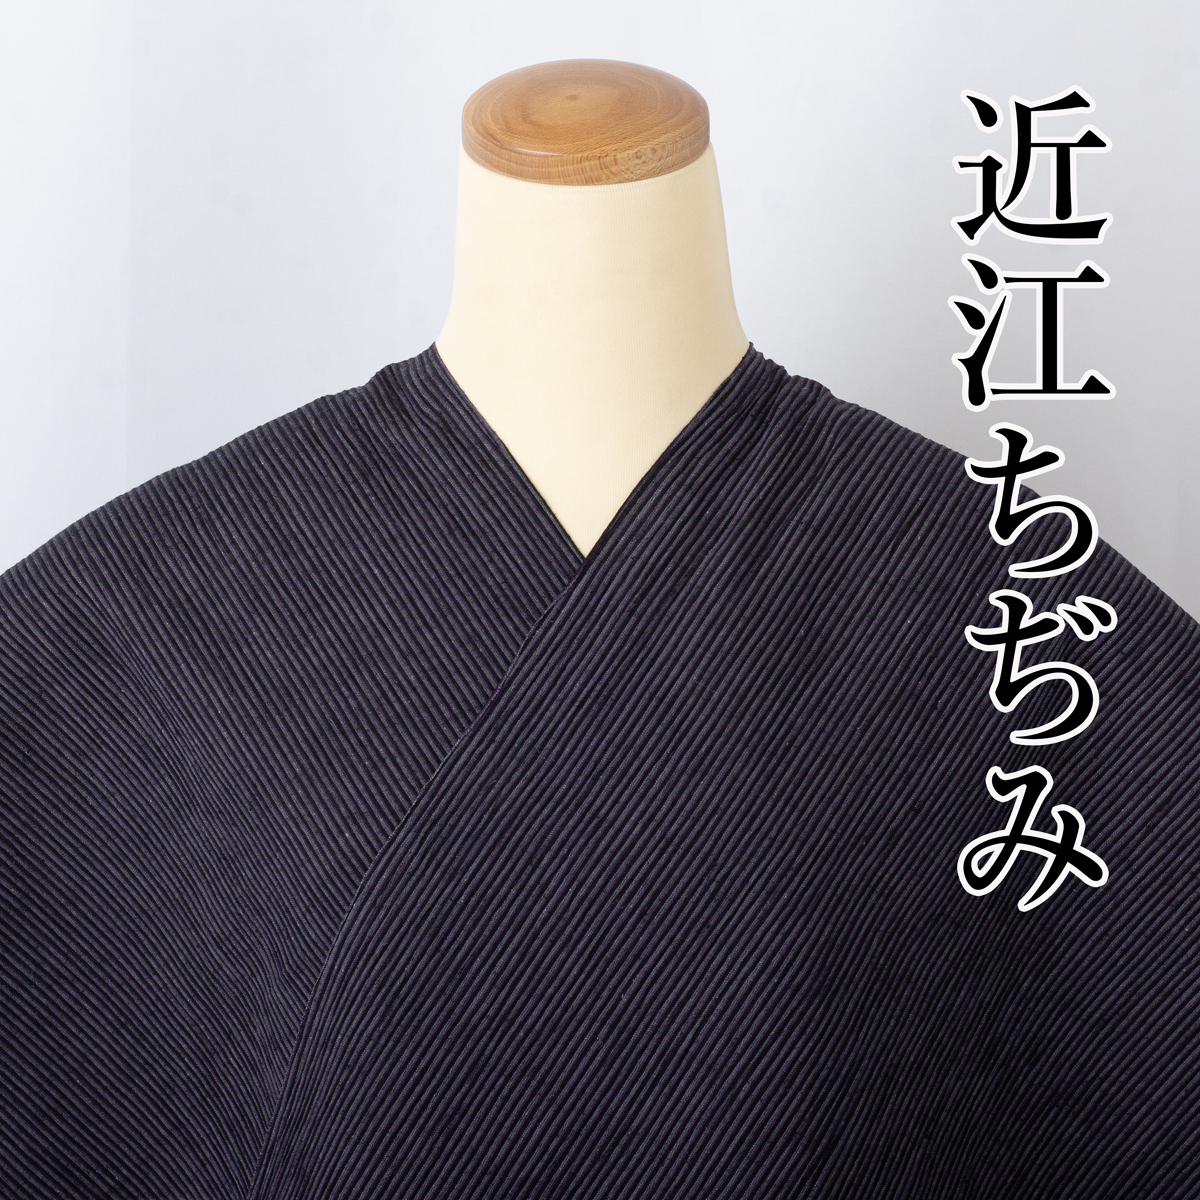 【近江ちぢみ 反物】川口織物謹製 新品 no.3503 綿麻の着物 夏の着物